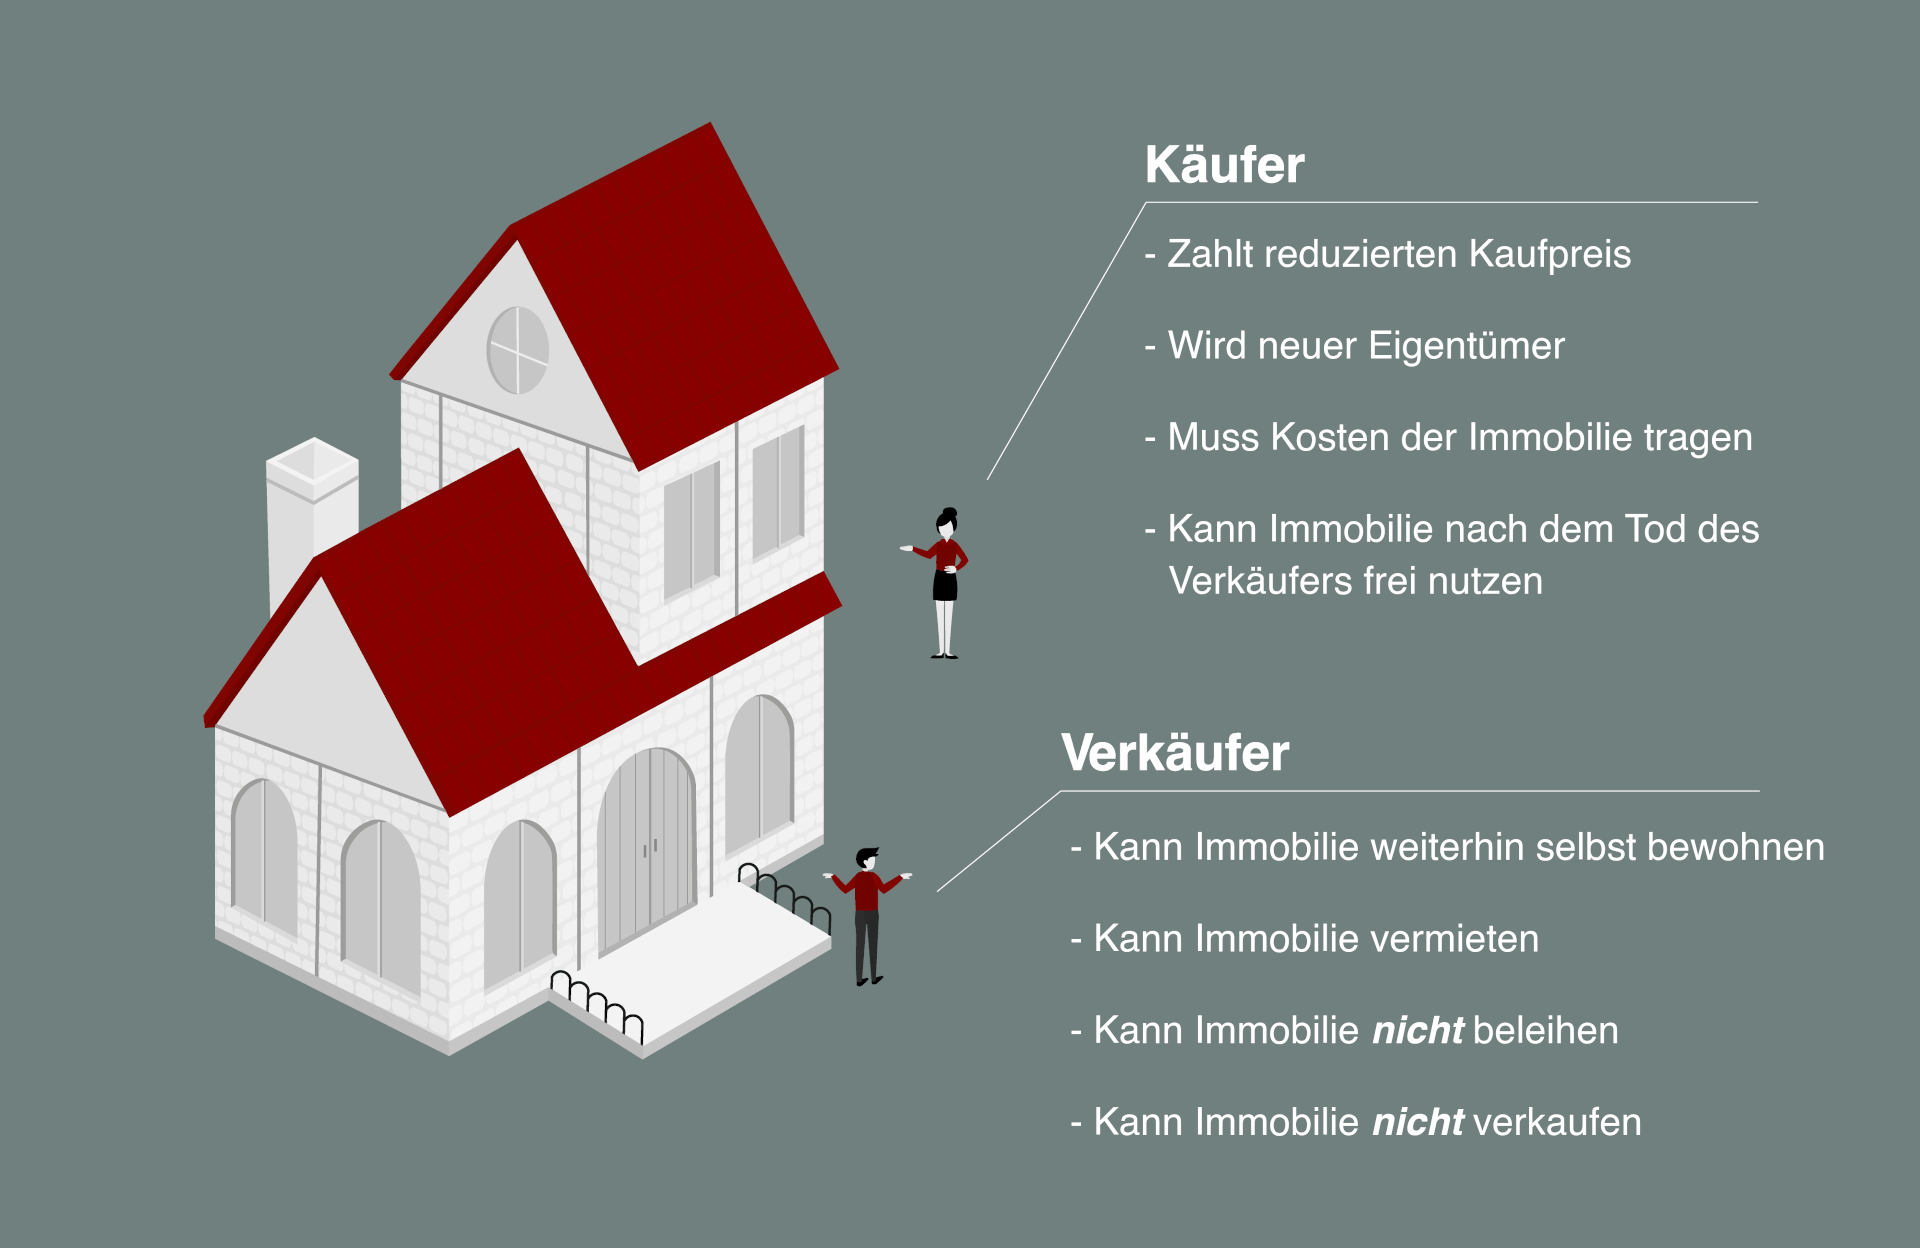 Infografik der Besonderheiten für Käufer und Verkäufer bei einer Immobilie mit Nießbrauchrecht.